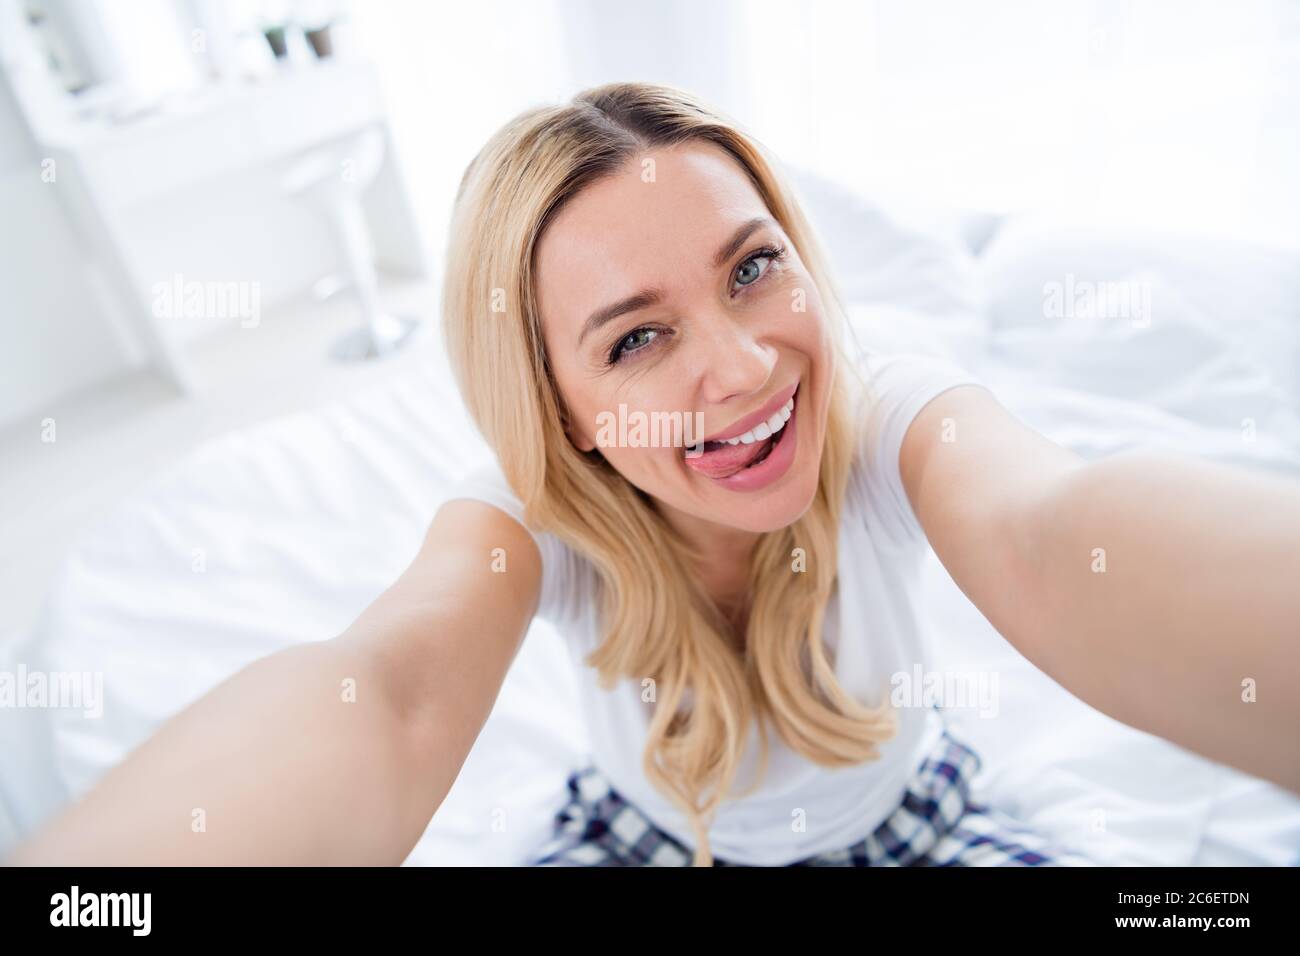 women oral selfies video gallerie photo